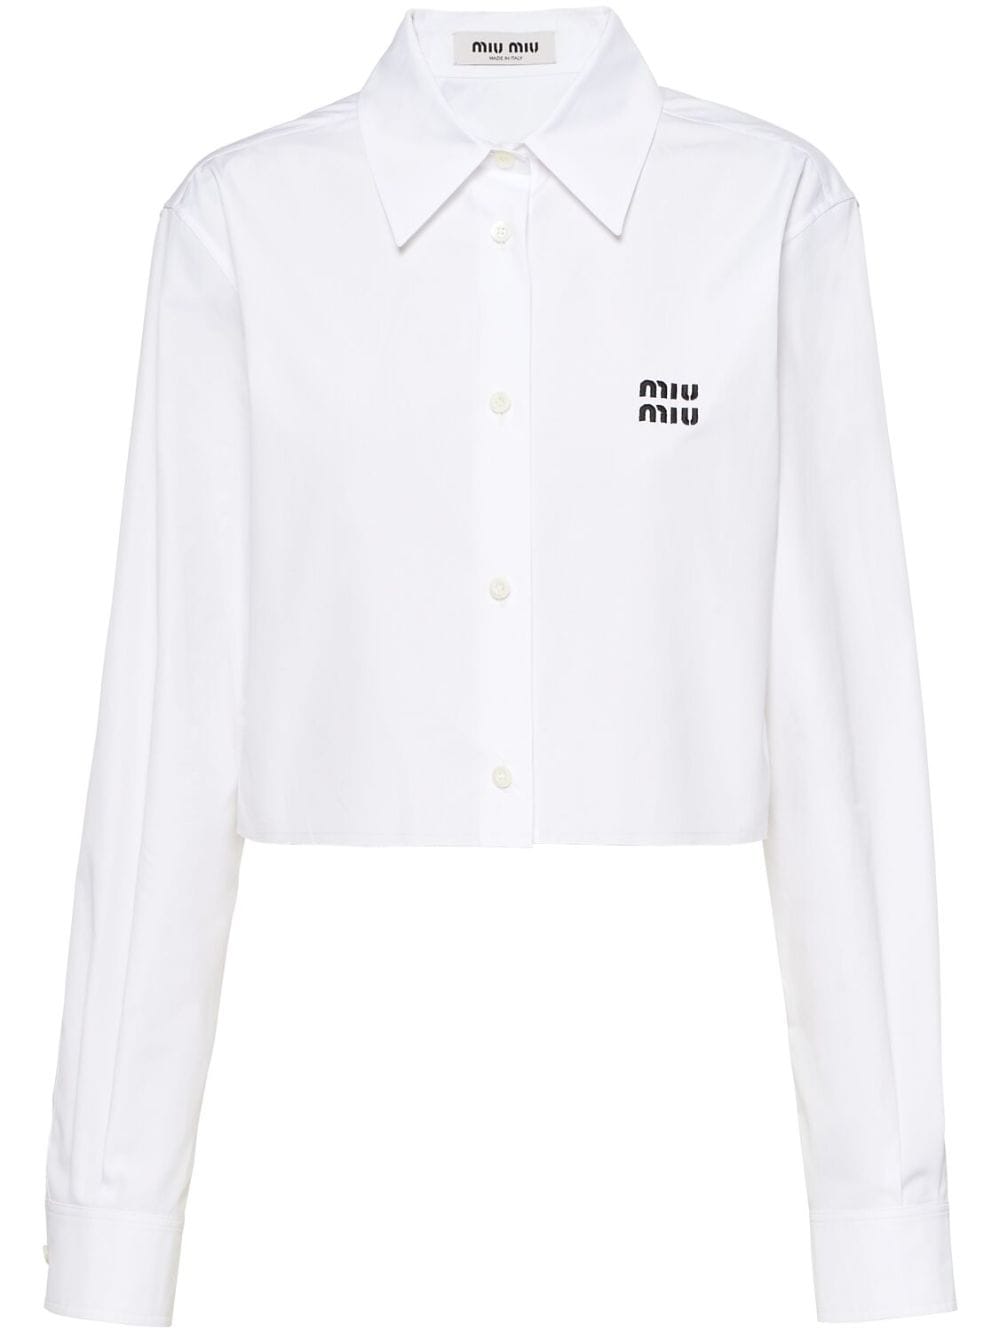 Miu Miu Poplin Shirt In F0009 White